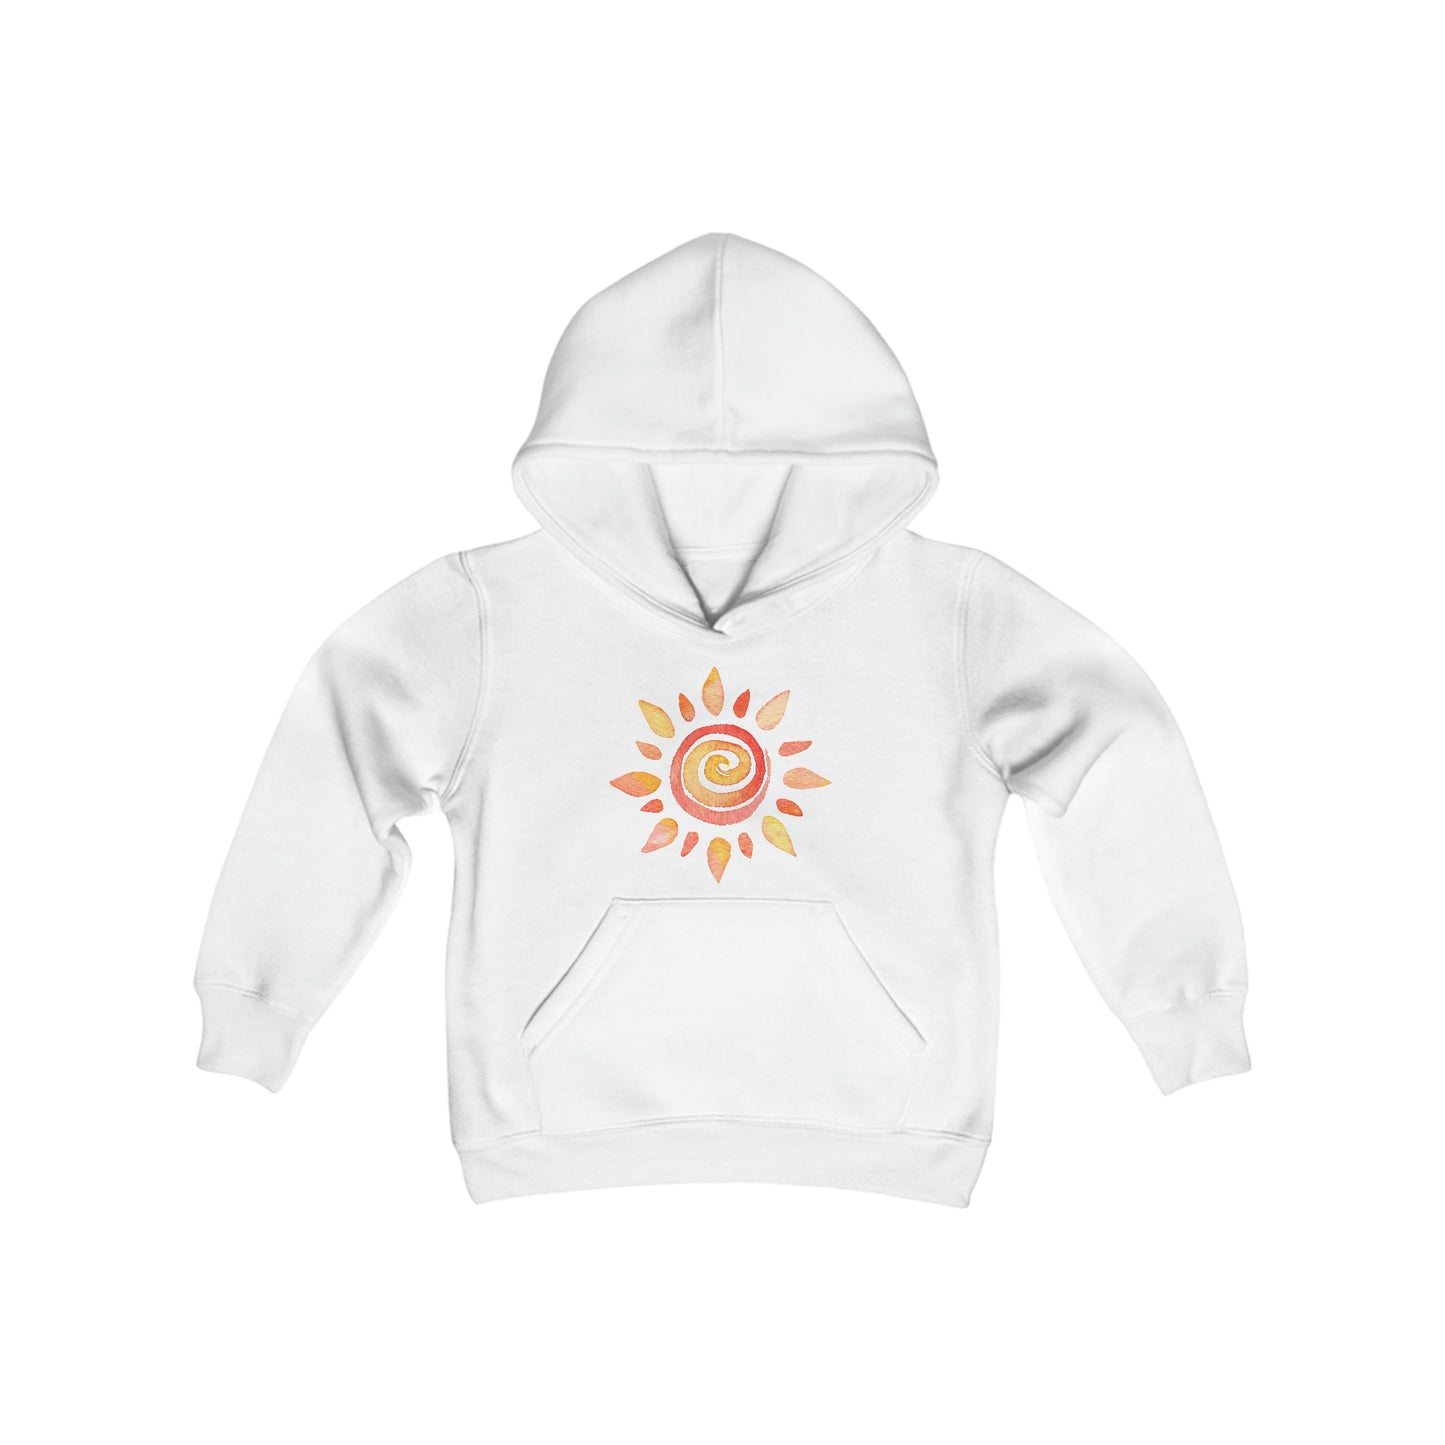 Watercolor Sun - Youth Heavy Blend Hooded Sweatshirt